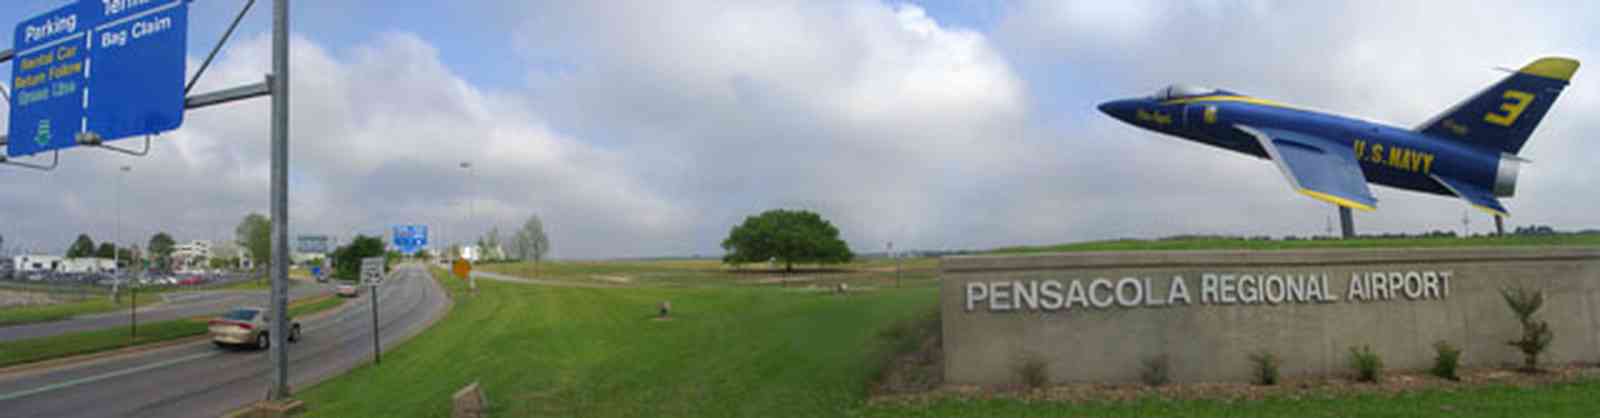 Pensacola:-Regional-Airport_01.jpg:  blue angels jet plane, airport, oak tree, runway